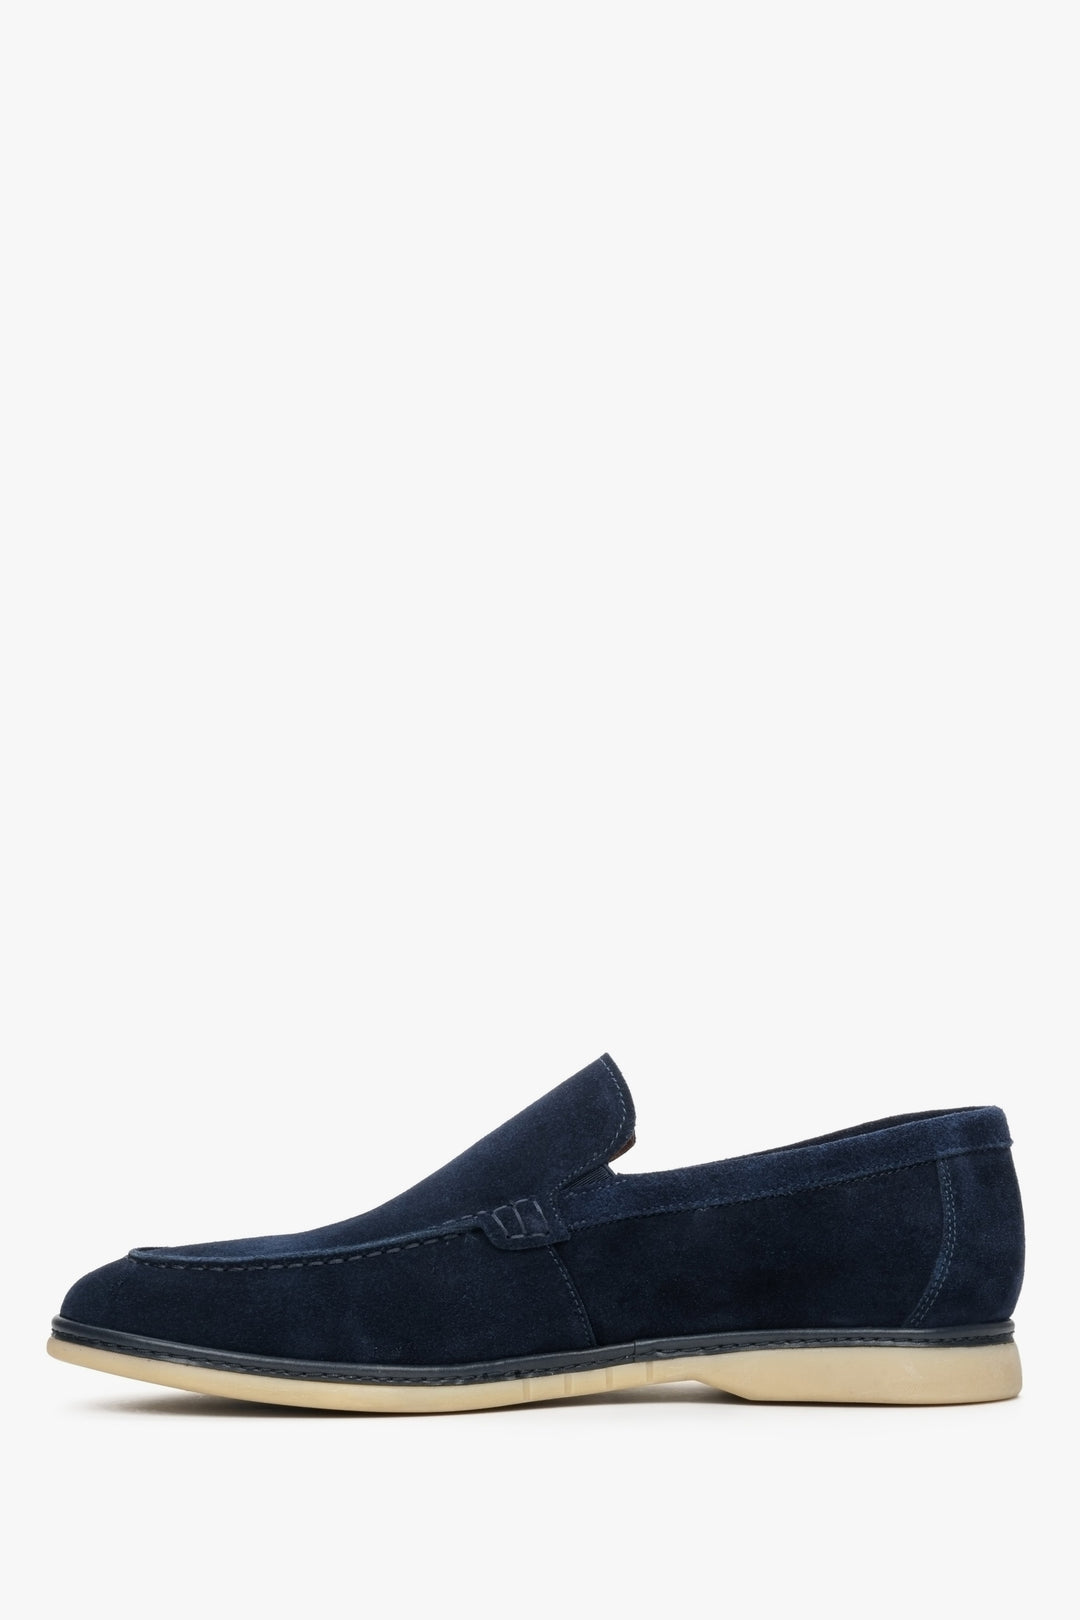 Navy blue velvet men's loafers for fall - shoe profile.